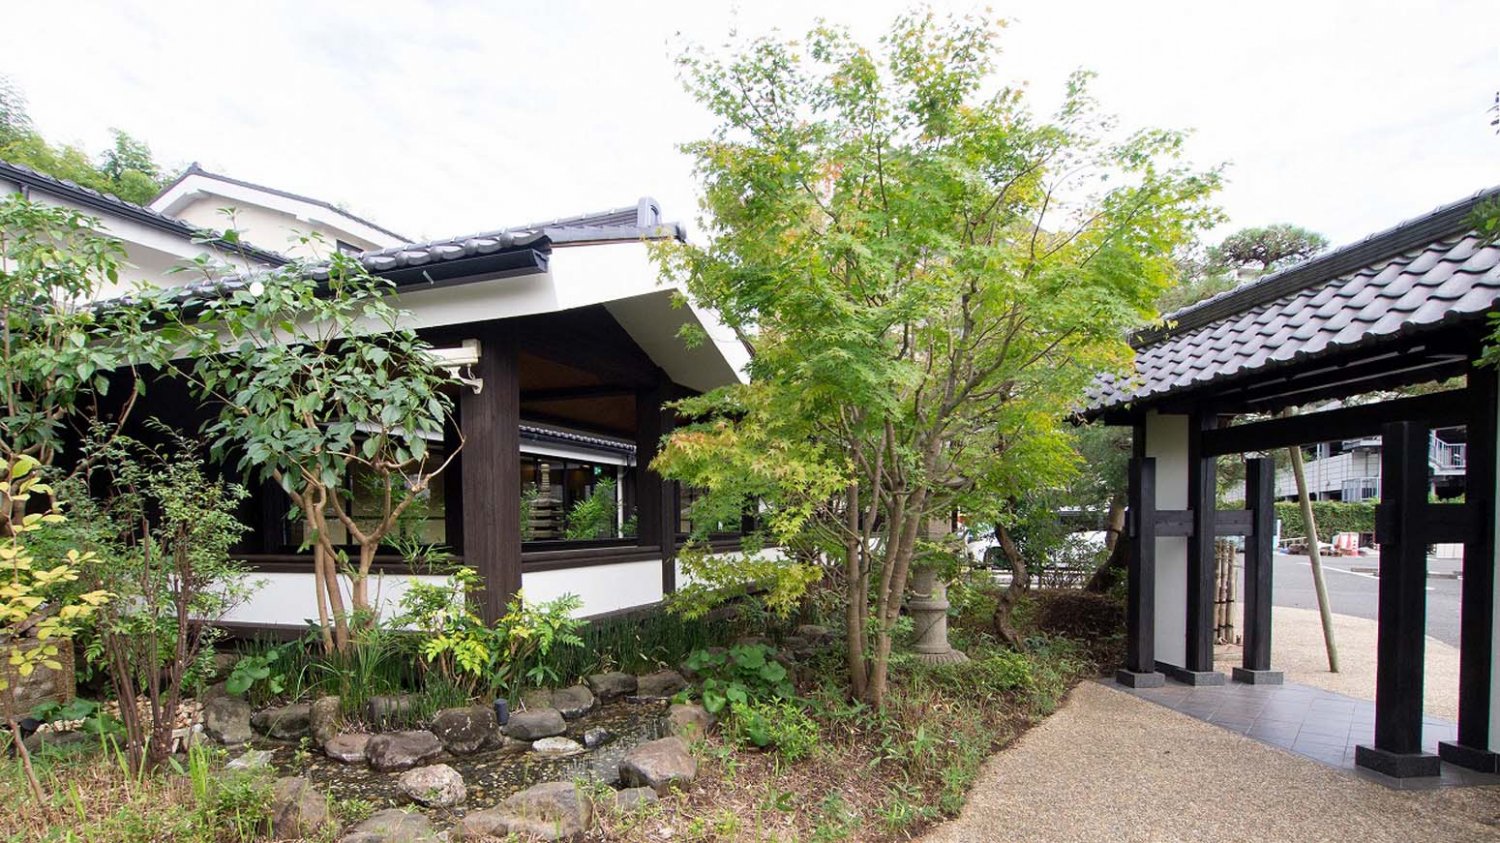 純和風の建物や門が迎えるエントランス部は、日本旅館のような趣を感じさせる。